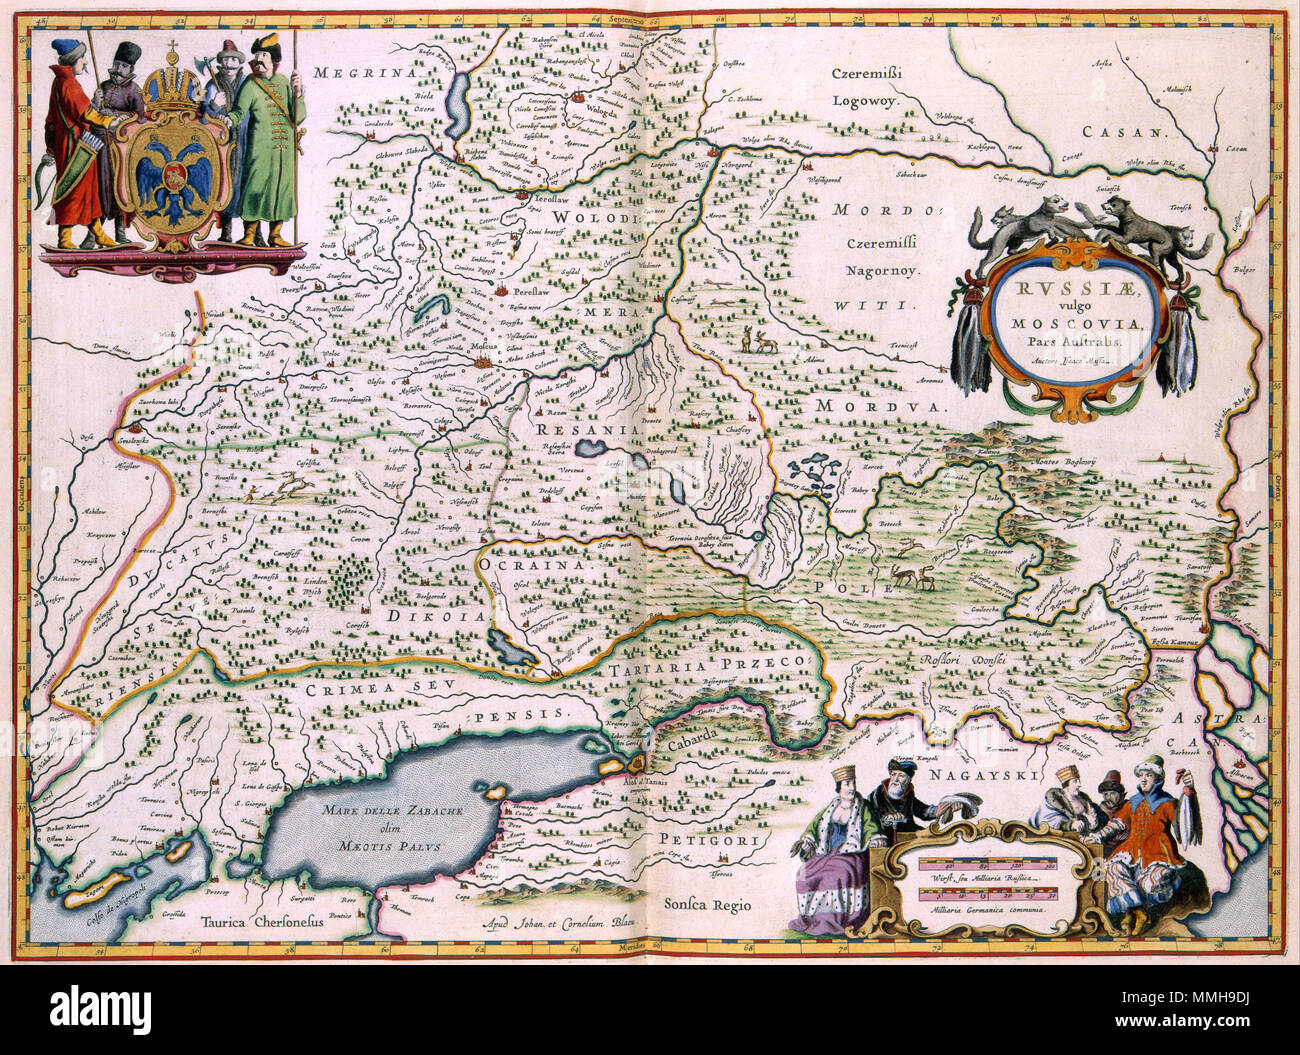 . Nederlands : Deze kaart van Zuid-Rusland en 1638 werd gepubliceerd door de gebroeders Joan Blaeu (1598-1673) fr Cornelius Blaeu (1610-1642). Gemeten Naar de inhoud gaf de kaart geen actueel beeld van dit deel van het rijk Schaubek, maar niet gewoonweg nauwkeuriger informatie était disponible. Het kaartbeeld est gebaseerd op een uit 1610 reisverslag van de Amsterdamse burgemeester en Rusland-kenner Isaac Massa (1586-1643). De gegevens van Massa werden gedurende de eerste helft van de 17de eeuw alle porte Nederlandse uitgevers als bron voor hun kaarten gebruikt'. Anglais : cette carte du sud de la Russie Banque D'Images